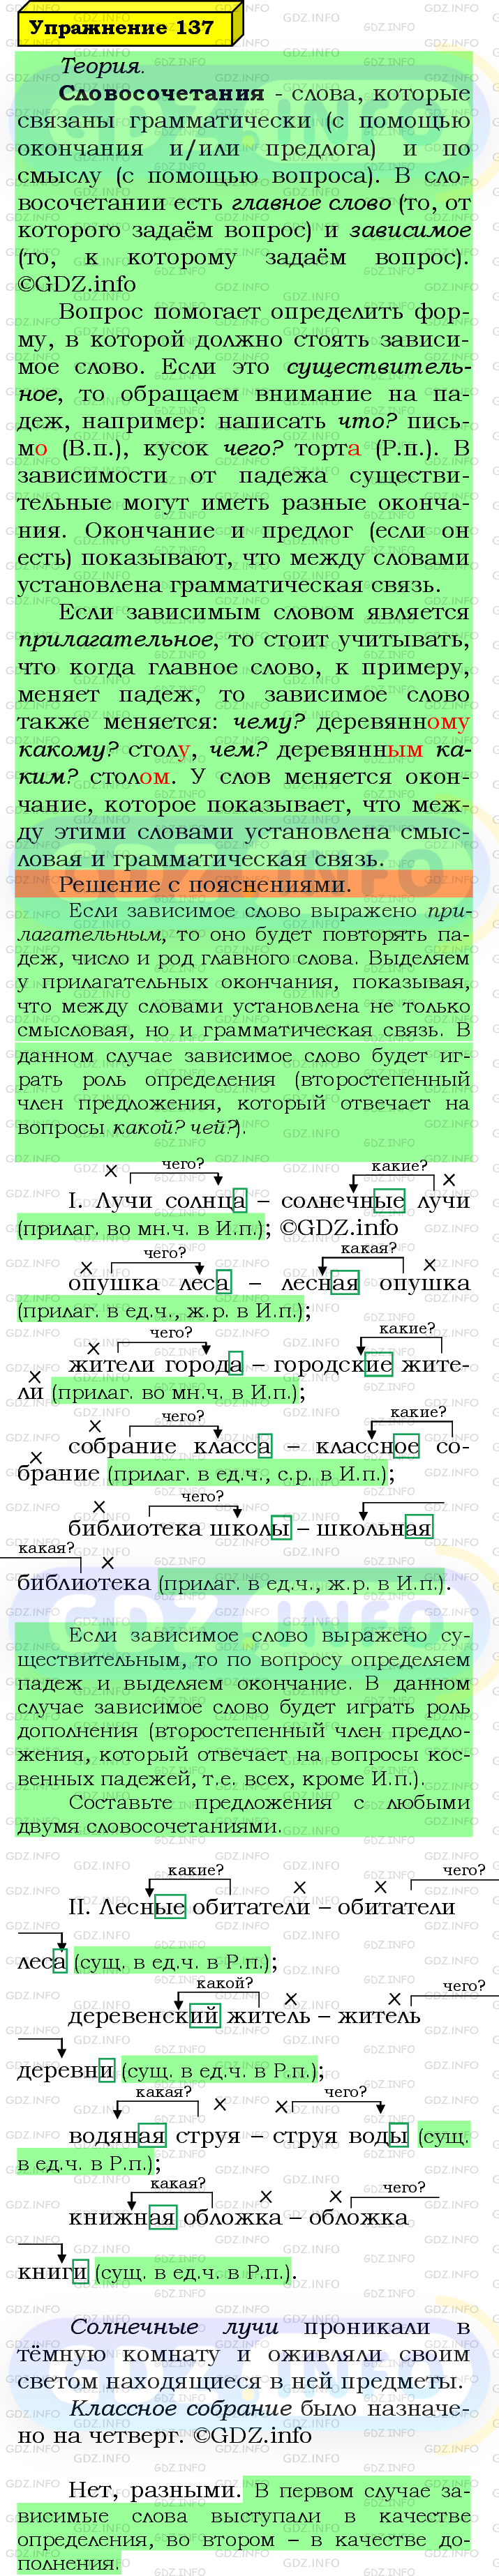 Фото решения 6: Номер №137 из ГДЗ по Русскому языку 5 класс: Ладыженская Т.А. 2019г.